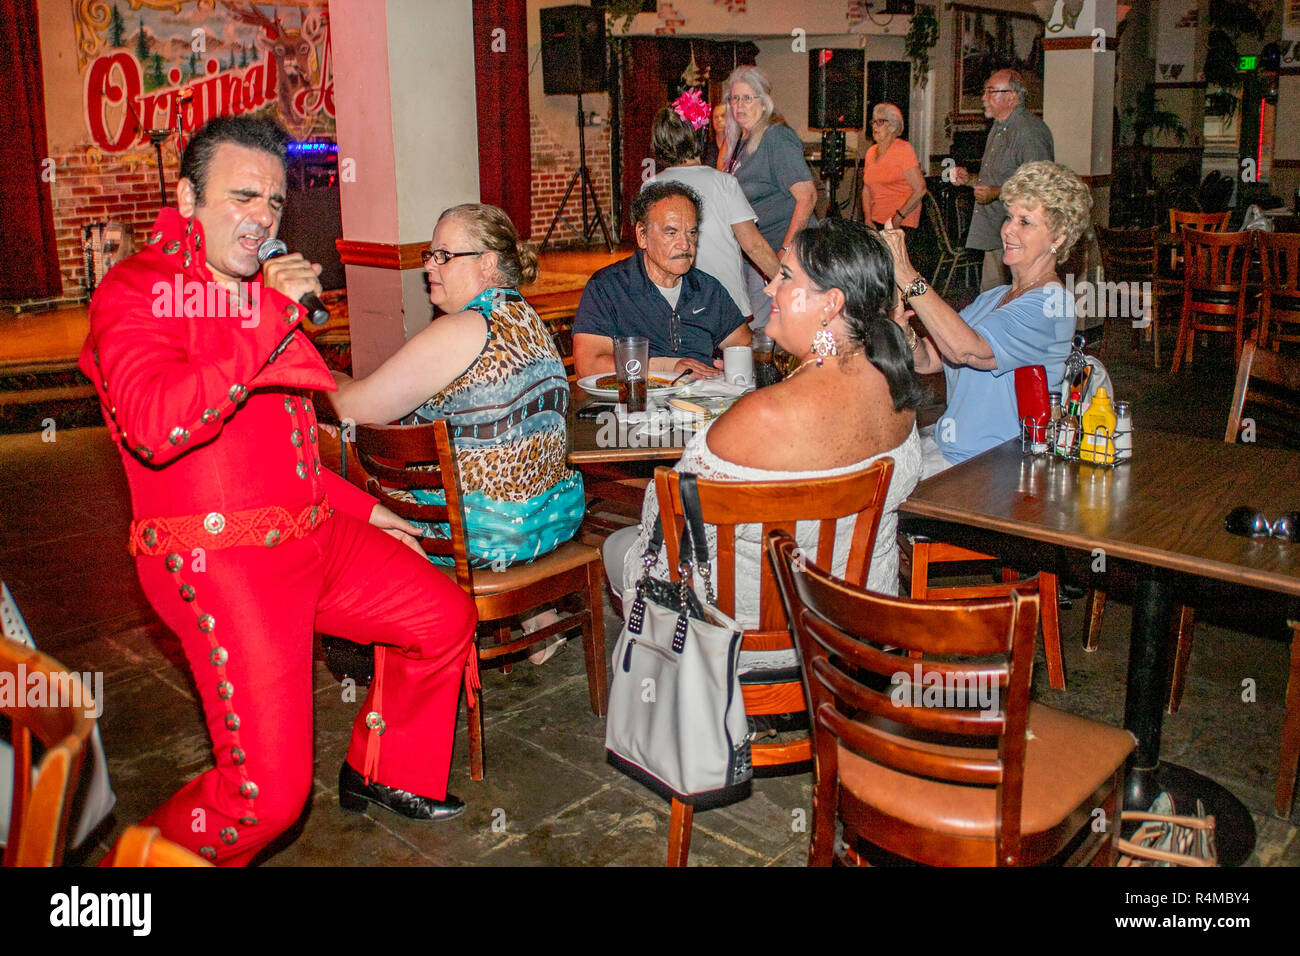 Das Tragen einer roten Overall, einer mittleren östlichen Amerikanischen Elvis Presley Imitator unterhält Erwachsene und Senioren bei einer Santa Ana, CA, Pub. Stockfoto